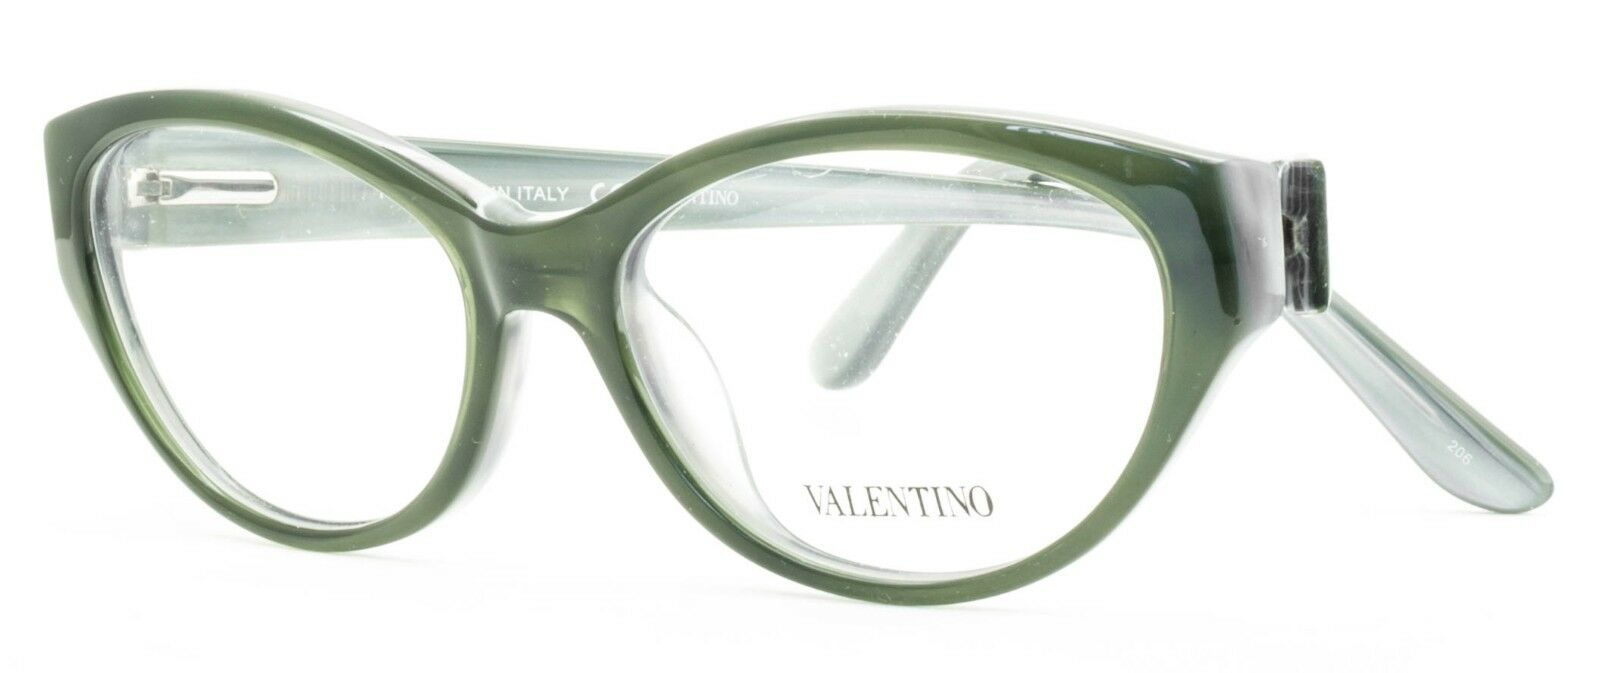 VALENTINO V2626 315 Eyewear FRAMES RX Optical Eyeglasses Glasses Italy New -BNIB